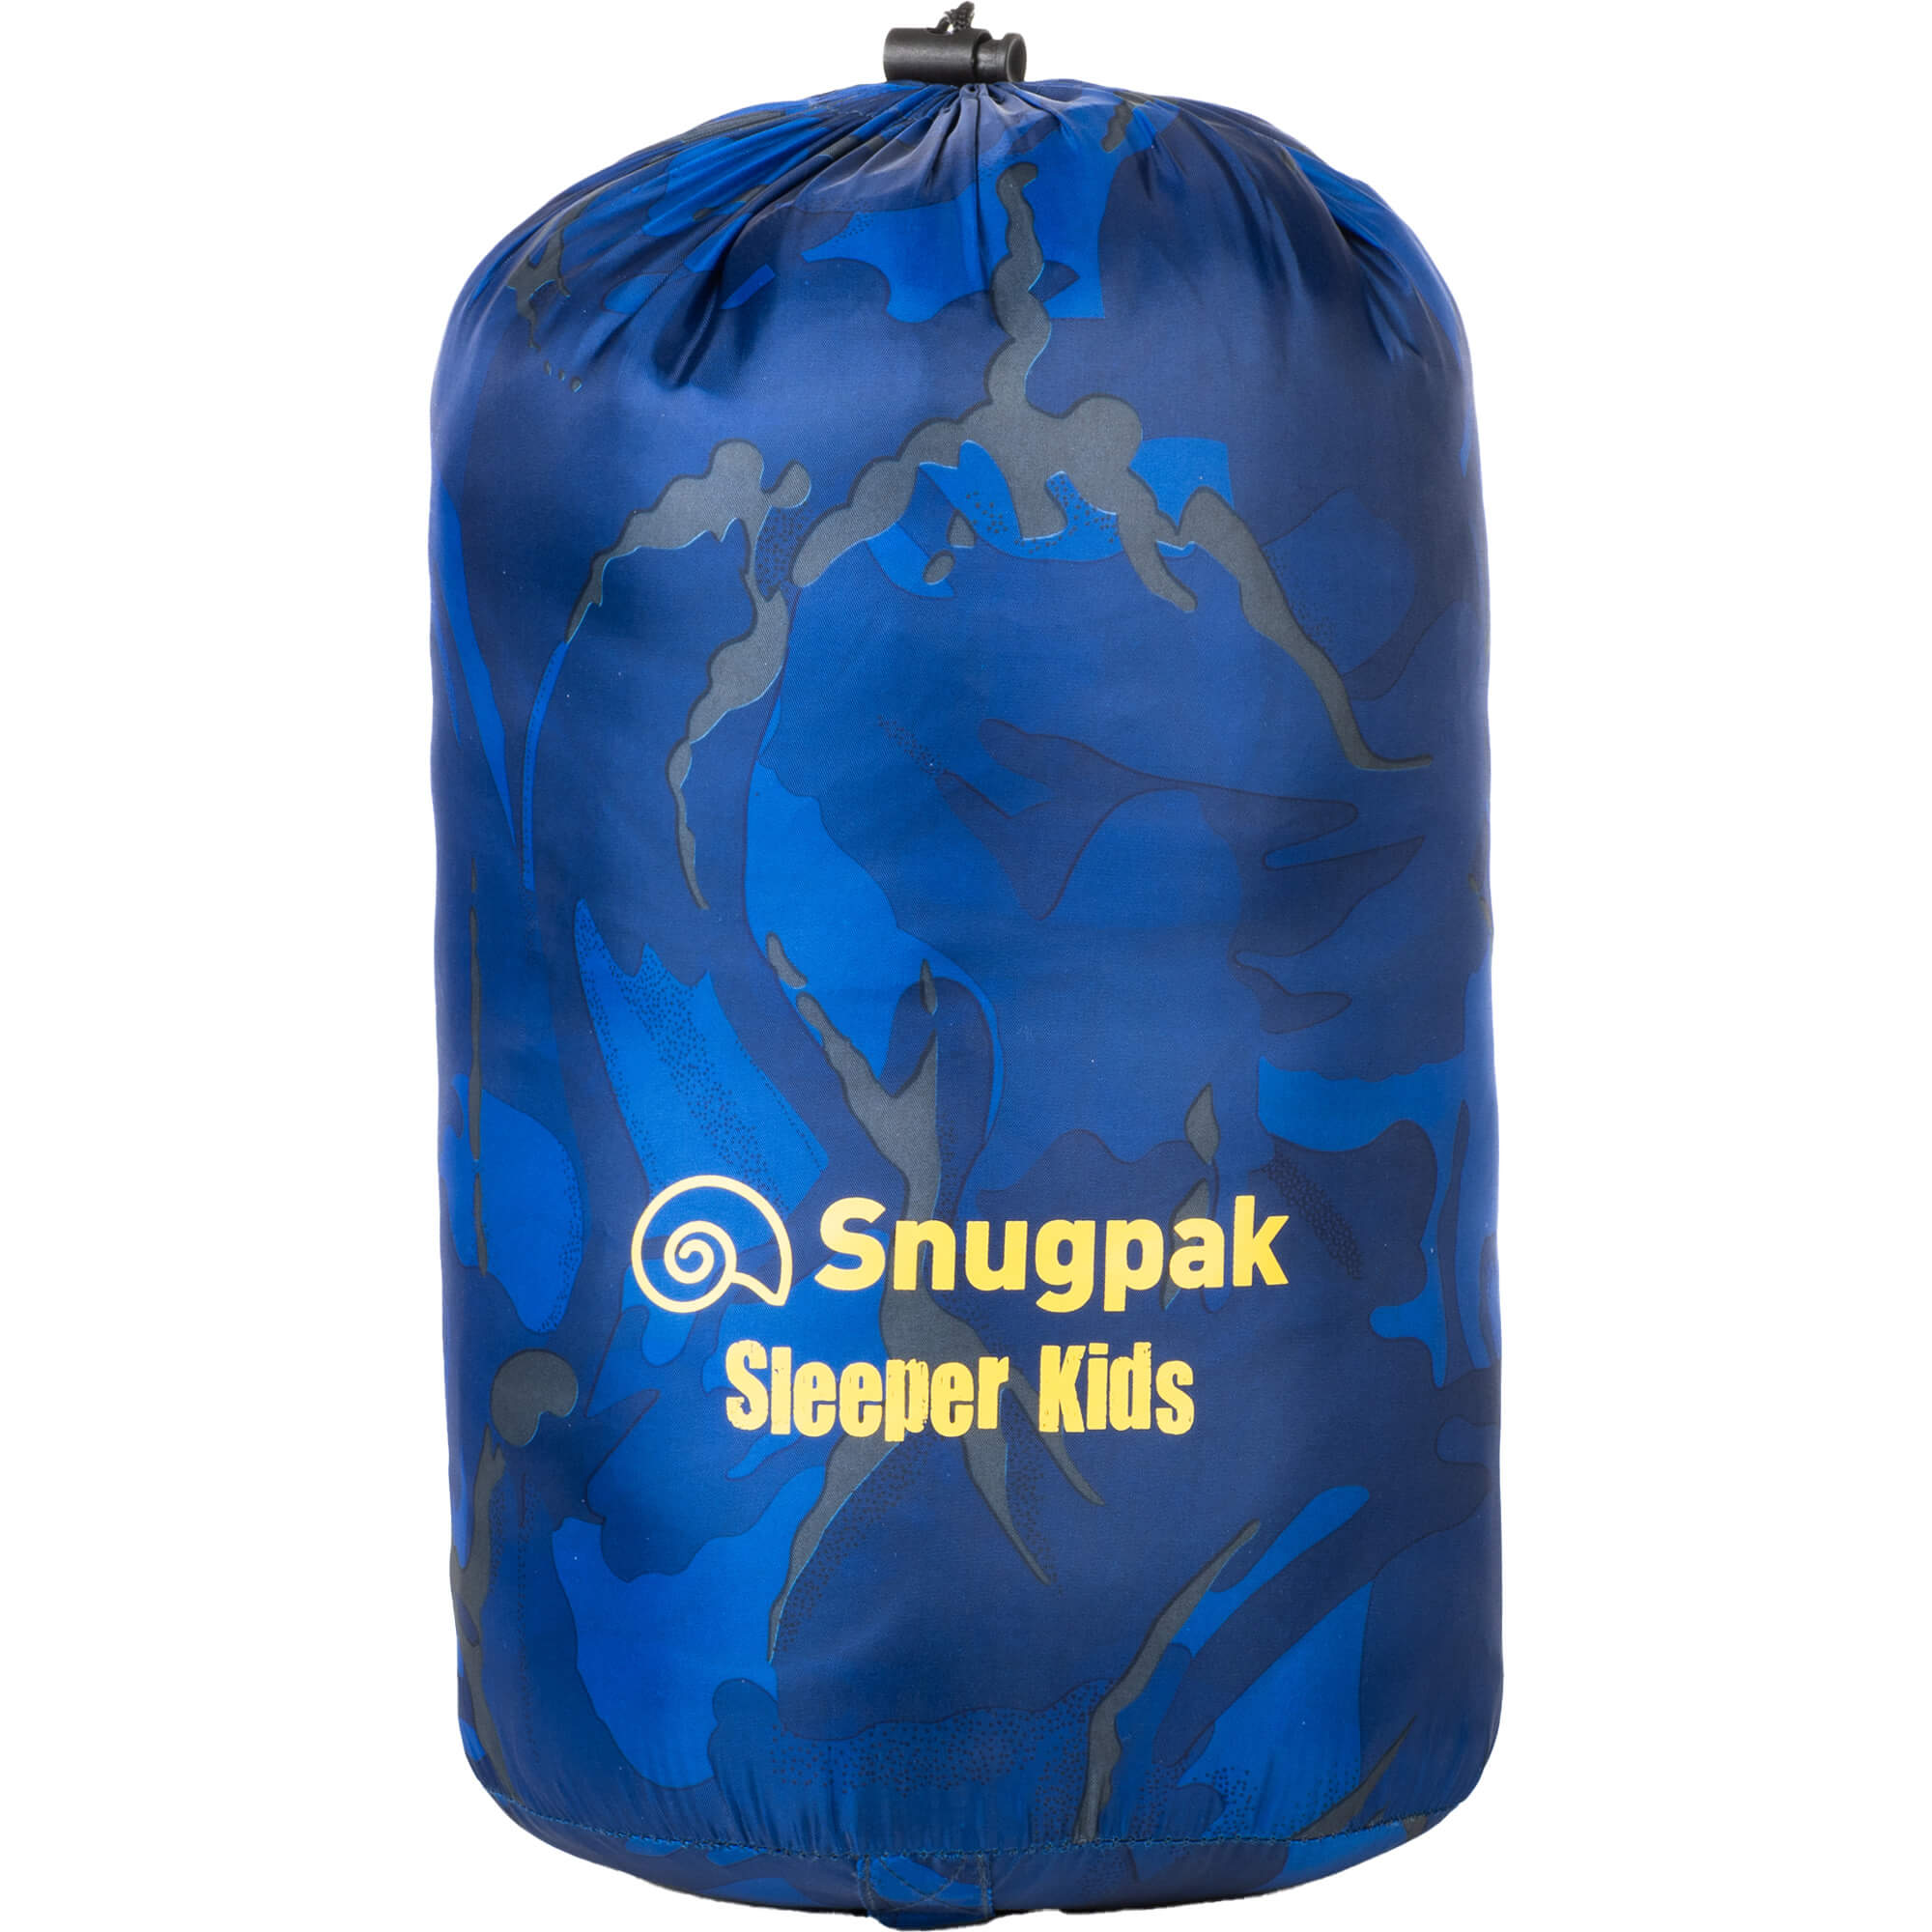 Snugpak Sleeper Kids Childrens Camping Sleeping Bag